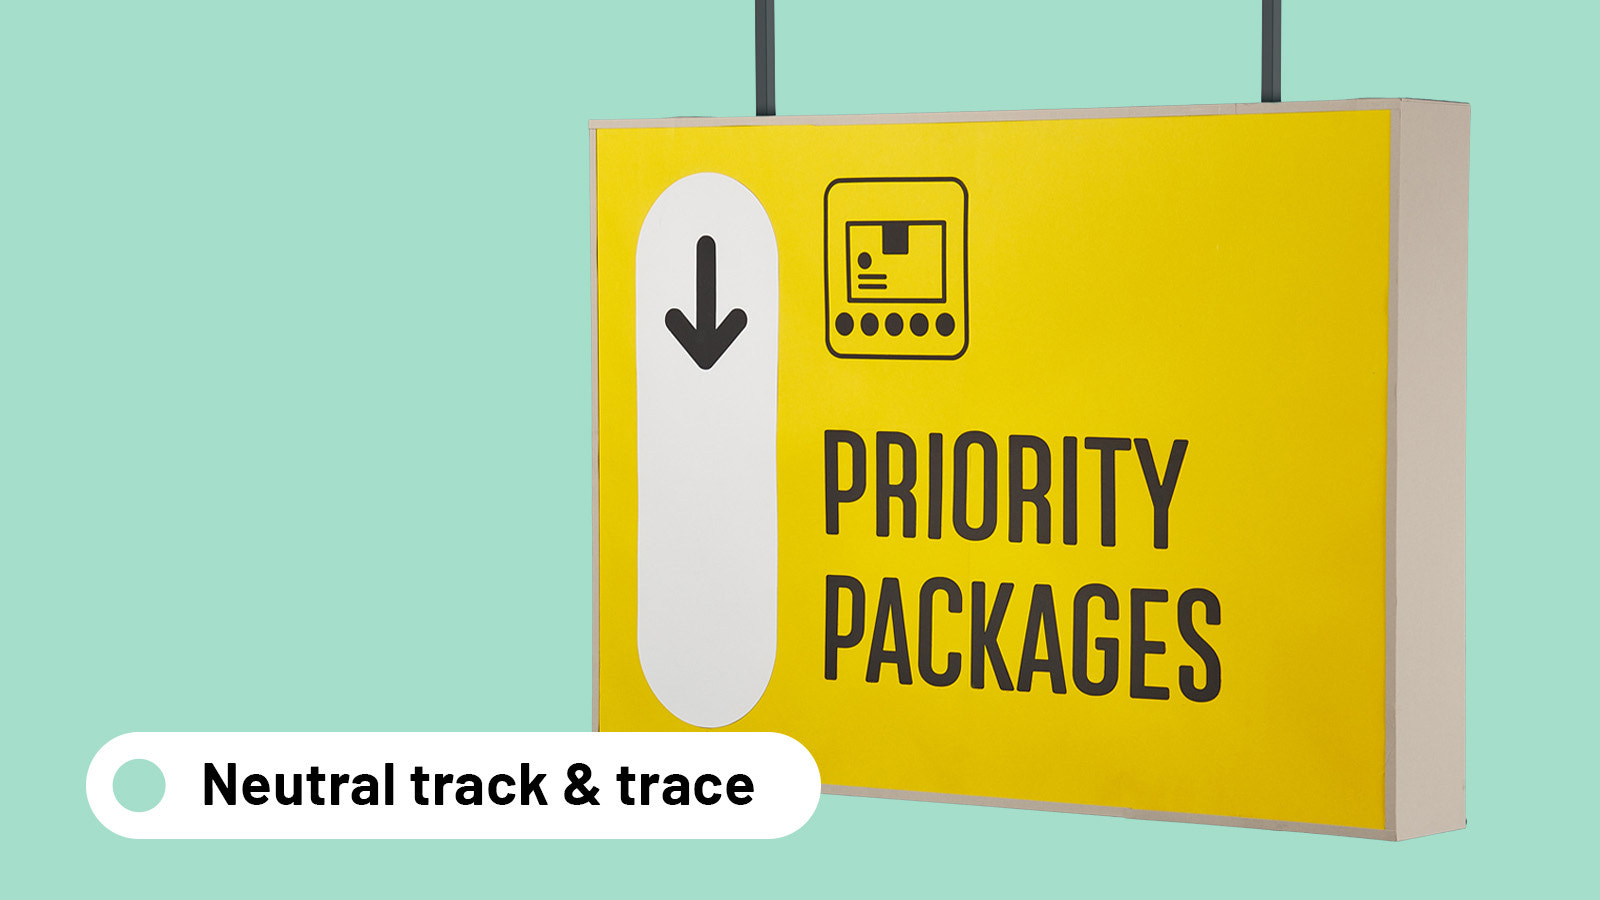 Kunder modtager en neutral track & trace side for opdateringer